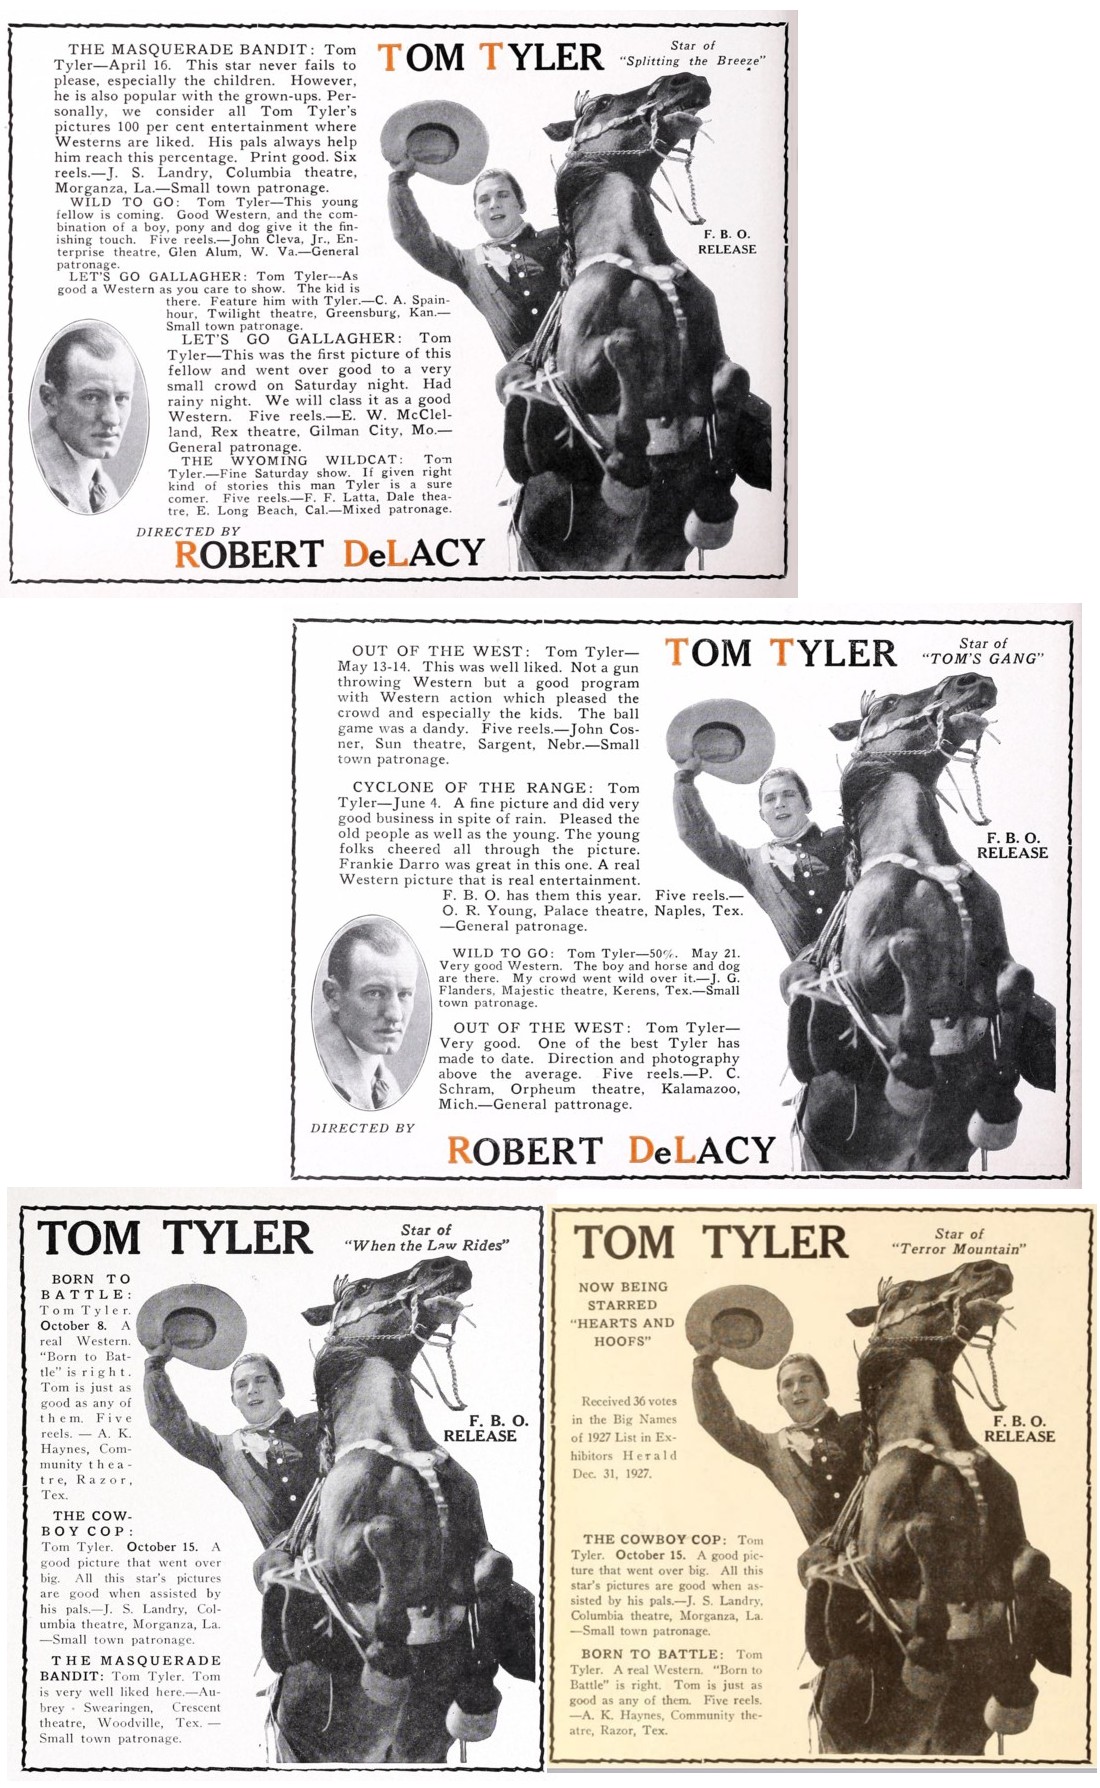 Exhibitor's Herald 1927 film praise for Tom Tyler